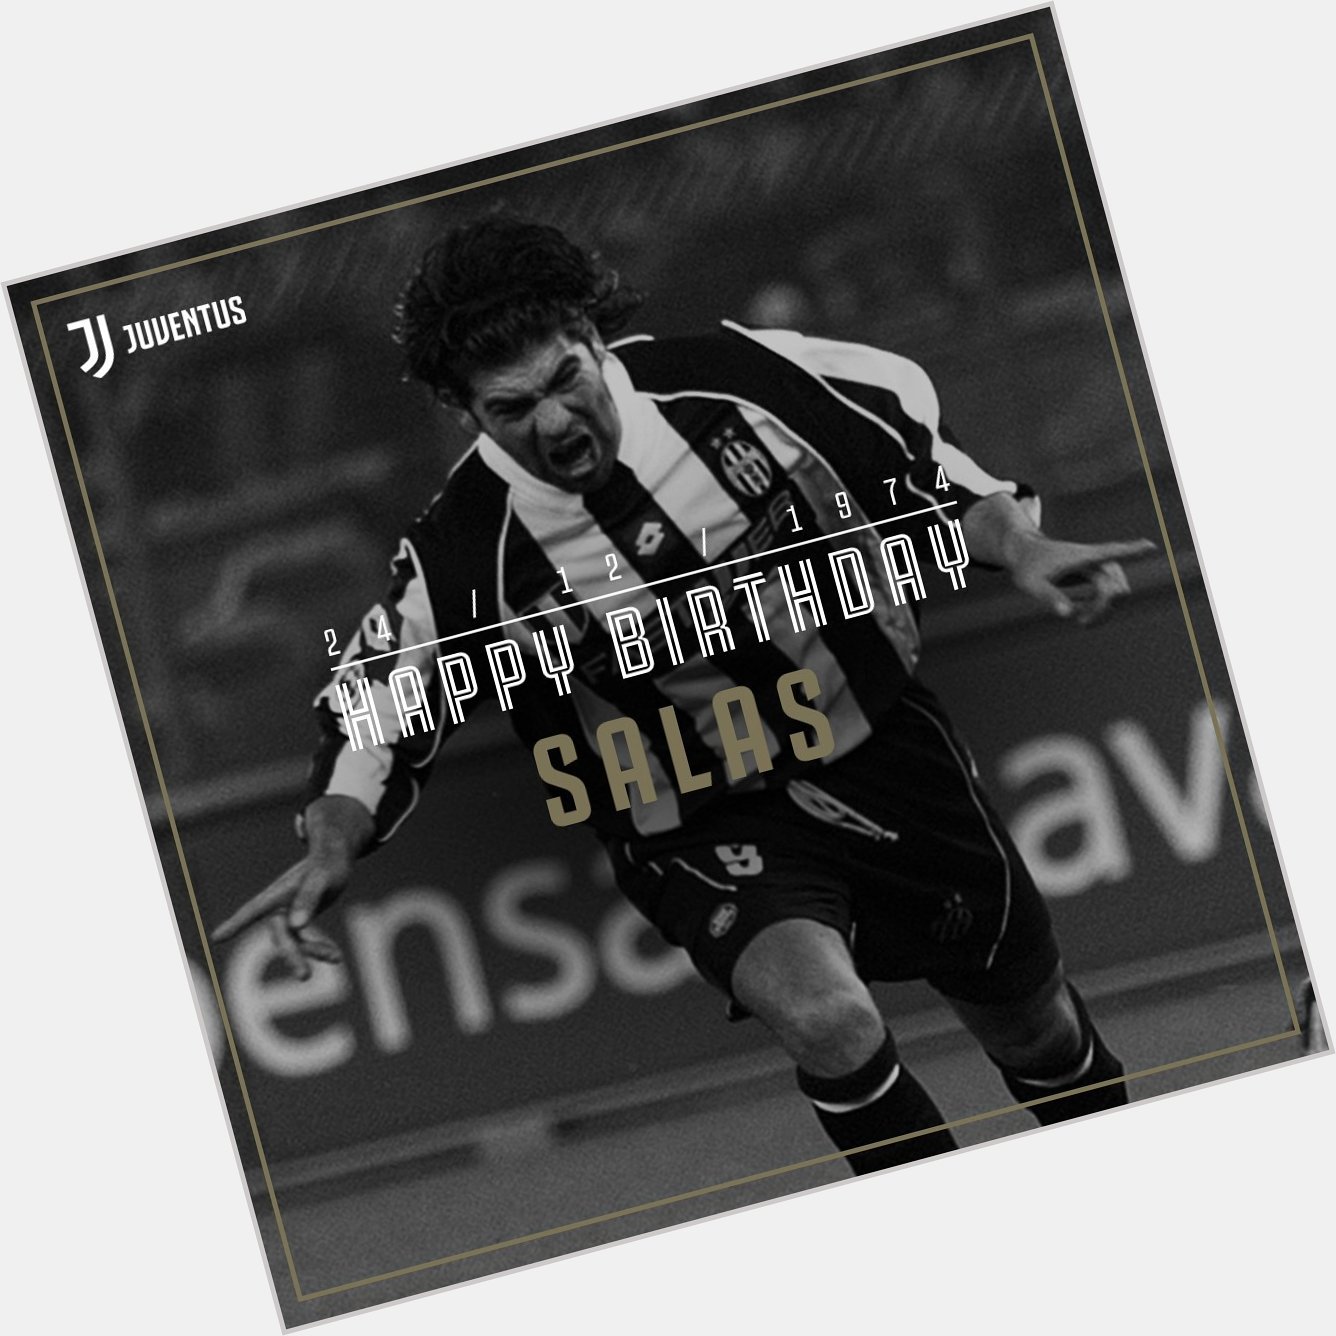 Happy 4  4  th birthday to El Matador, Marcelo Salas!    